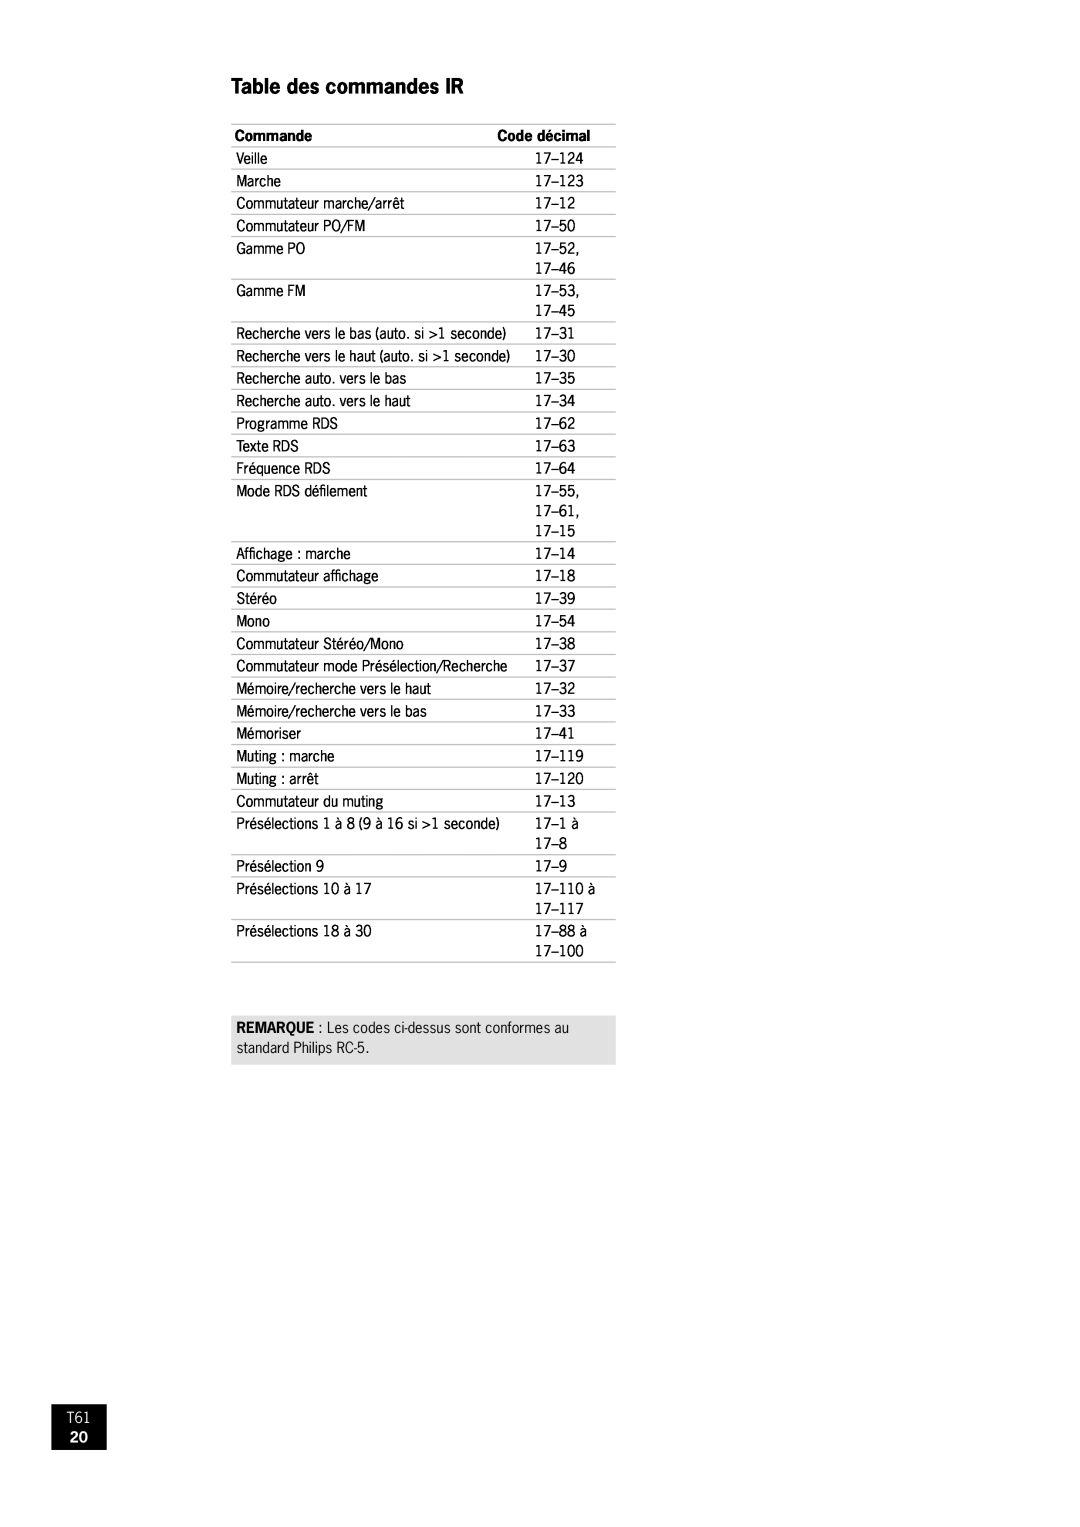 Arcam AM/FM Tuner T61 manual Table des commandes IR, Commande, Code décimal 